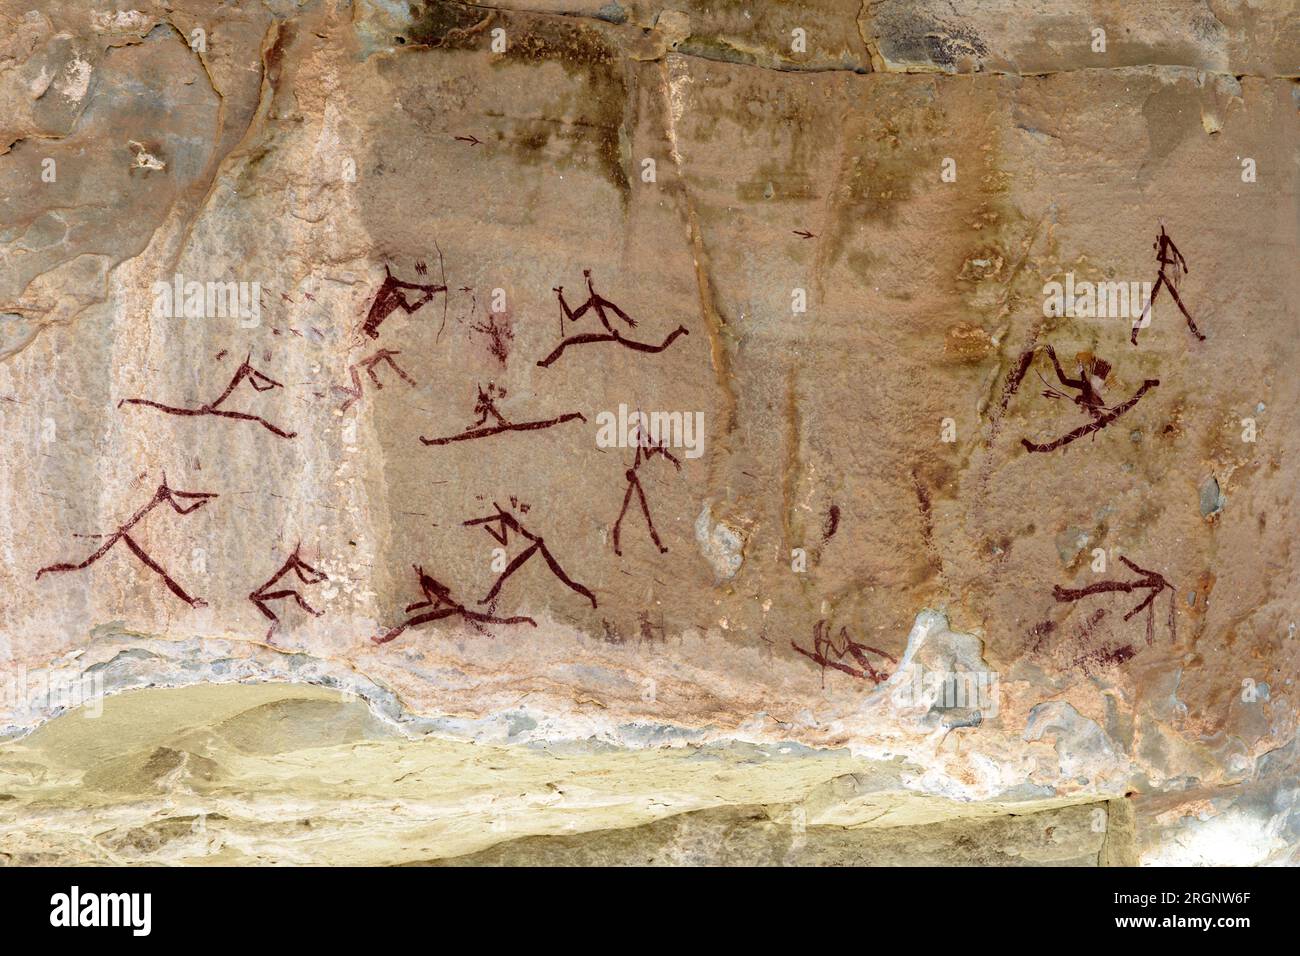 Images d'art rupestre dans la grotte de bataille d'Injisuthi dans la région du château des géants dans les montagnes du Drakensberg en Afrique du Sud Banque D'Images